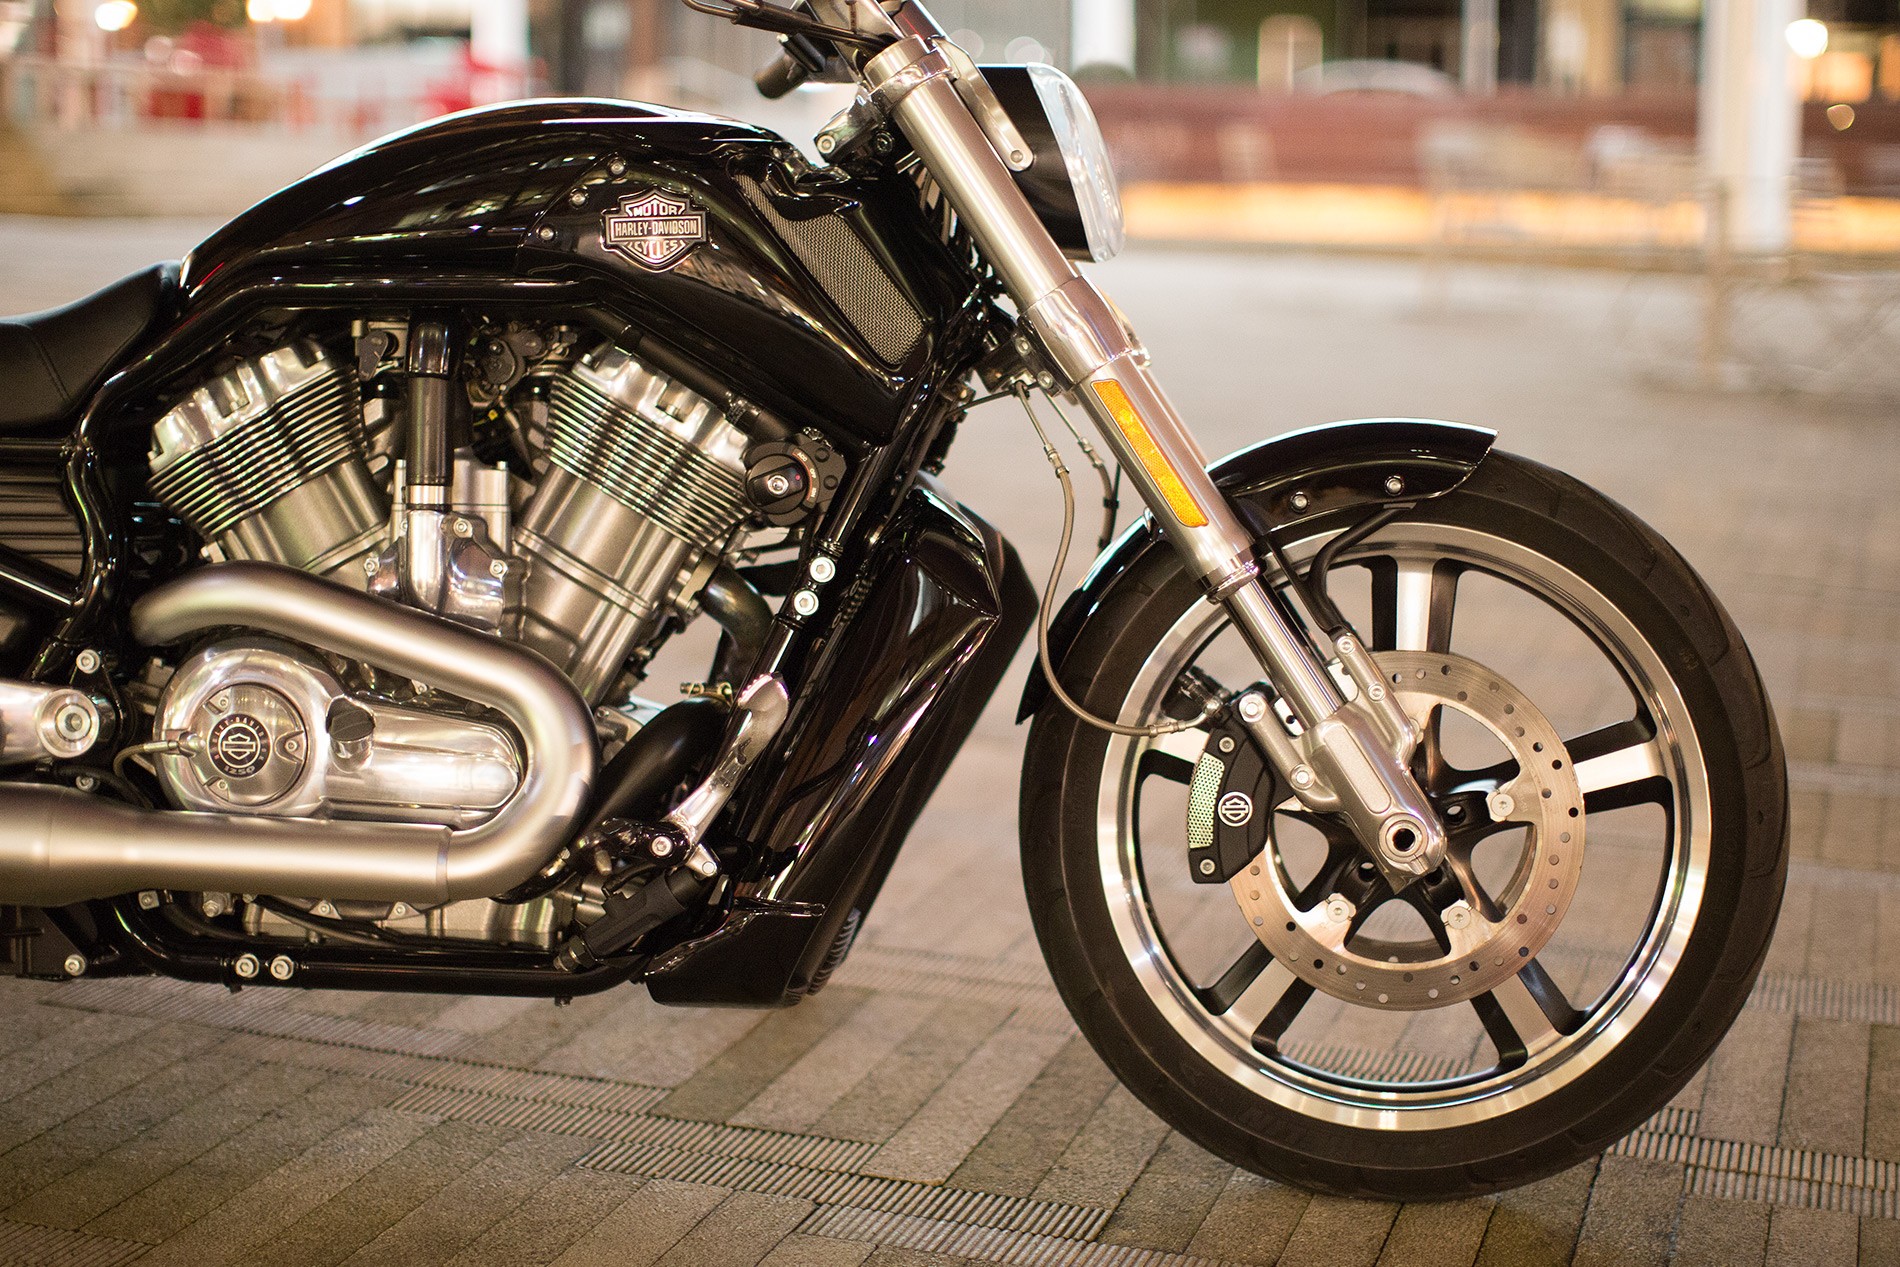 Harley Davidson v Rod muscle